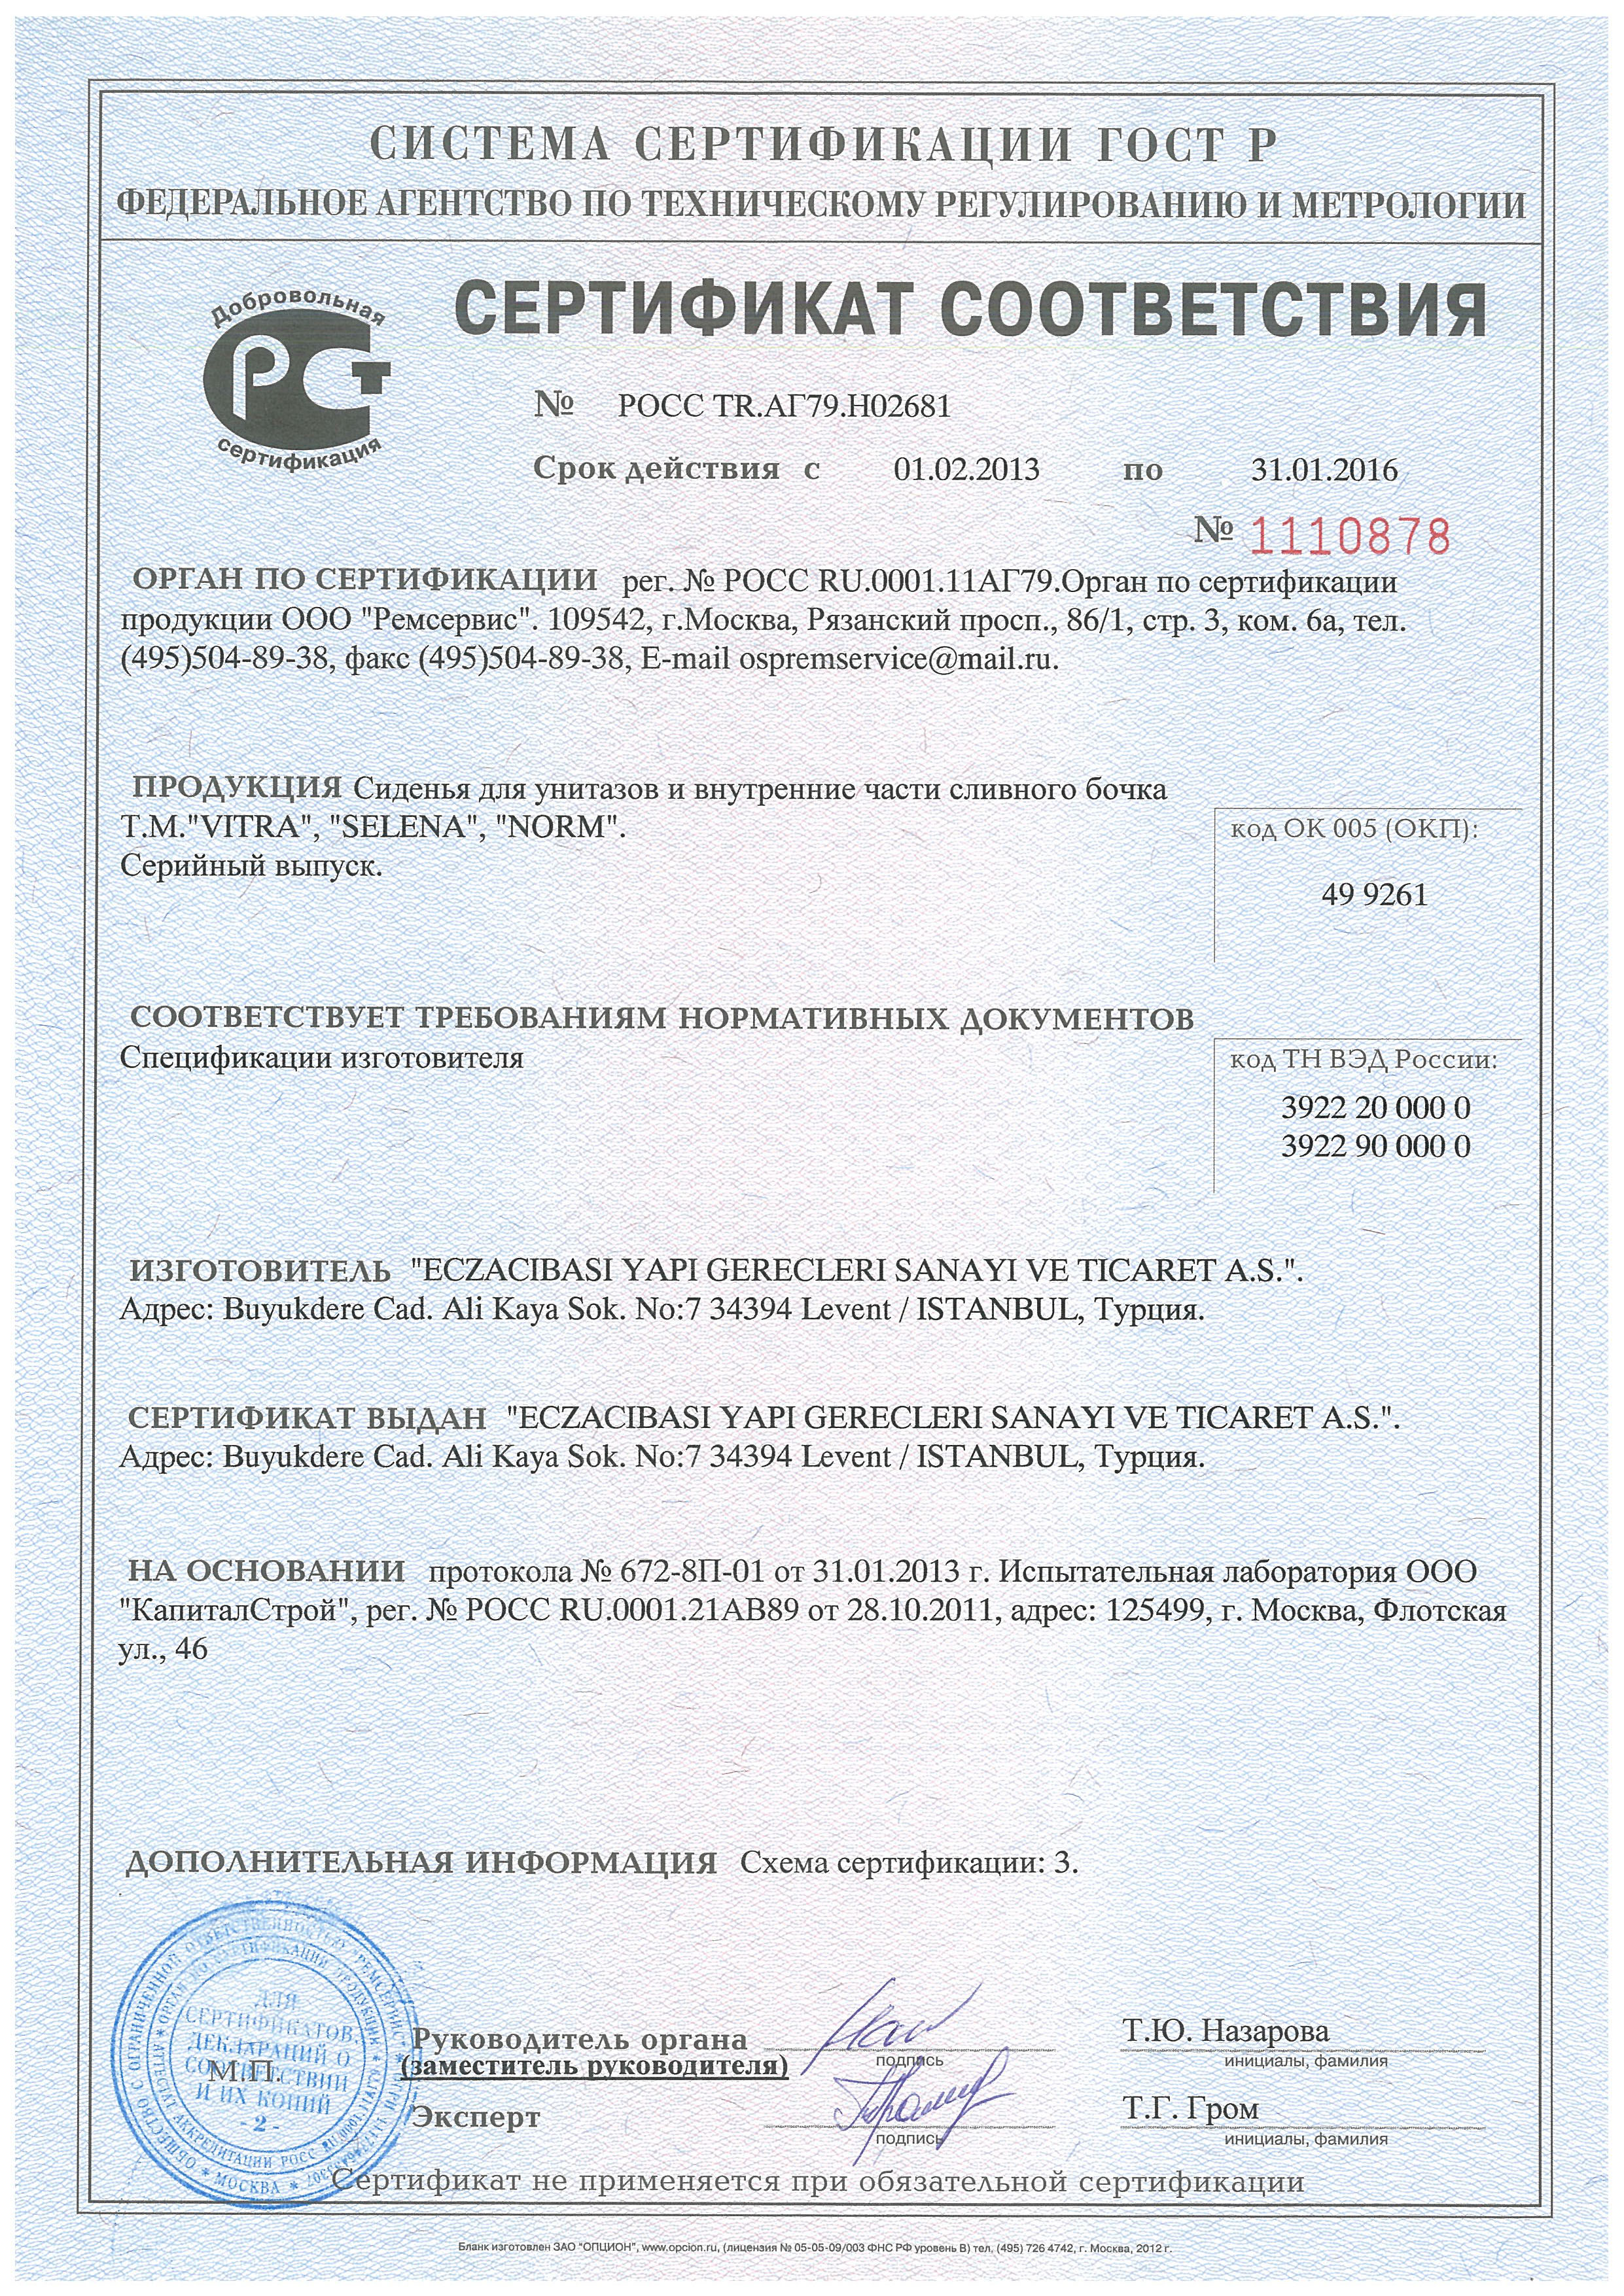 Сертификат соответствия ( Сиденья для унитазов и внутренние части сливного бочка Vitra)